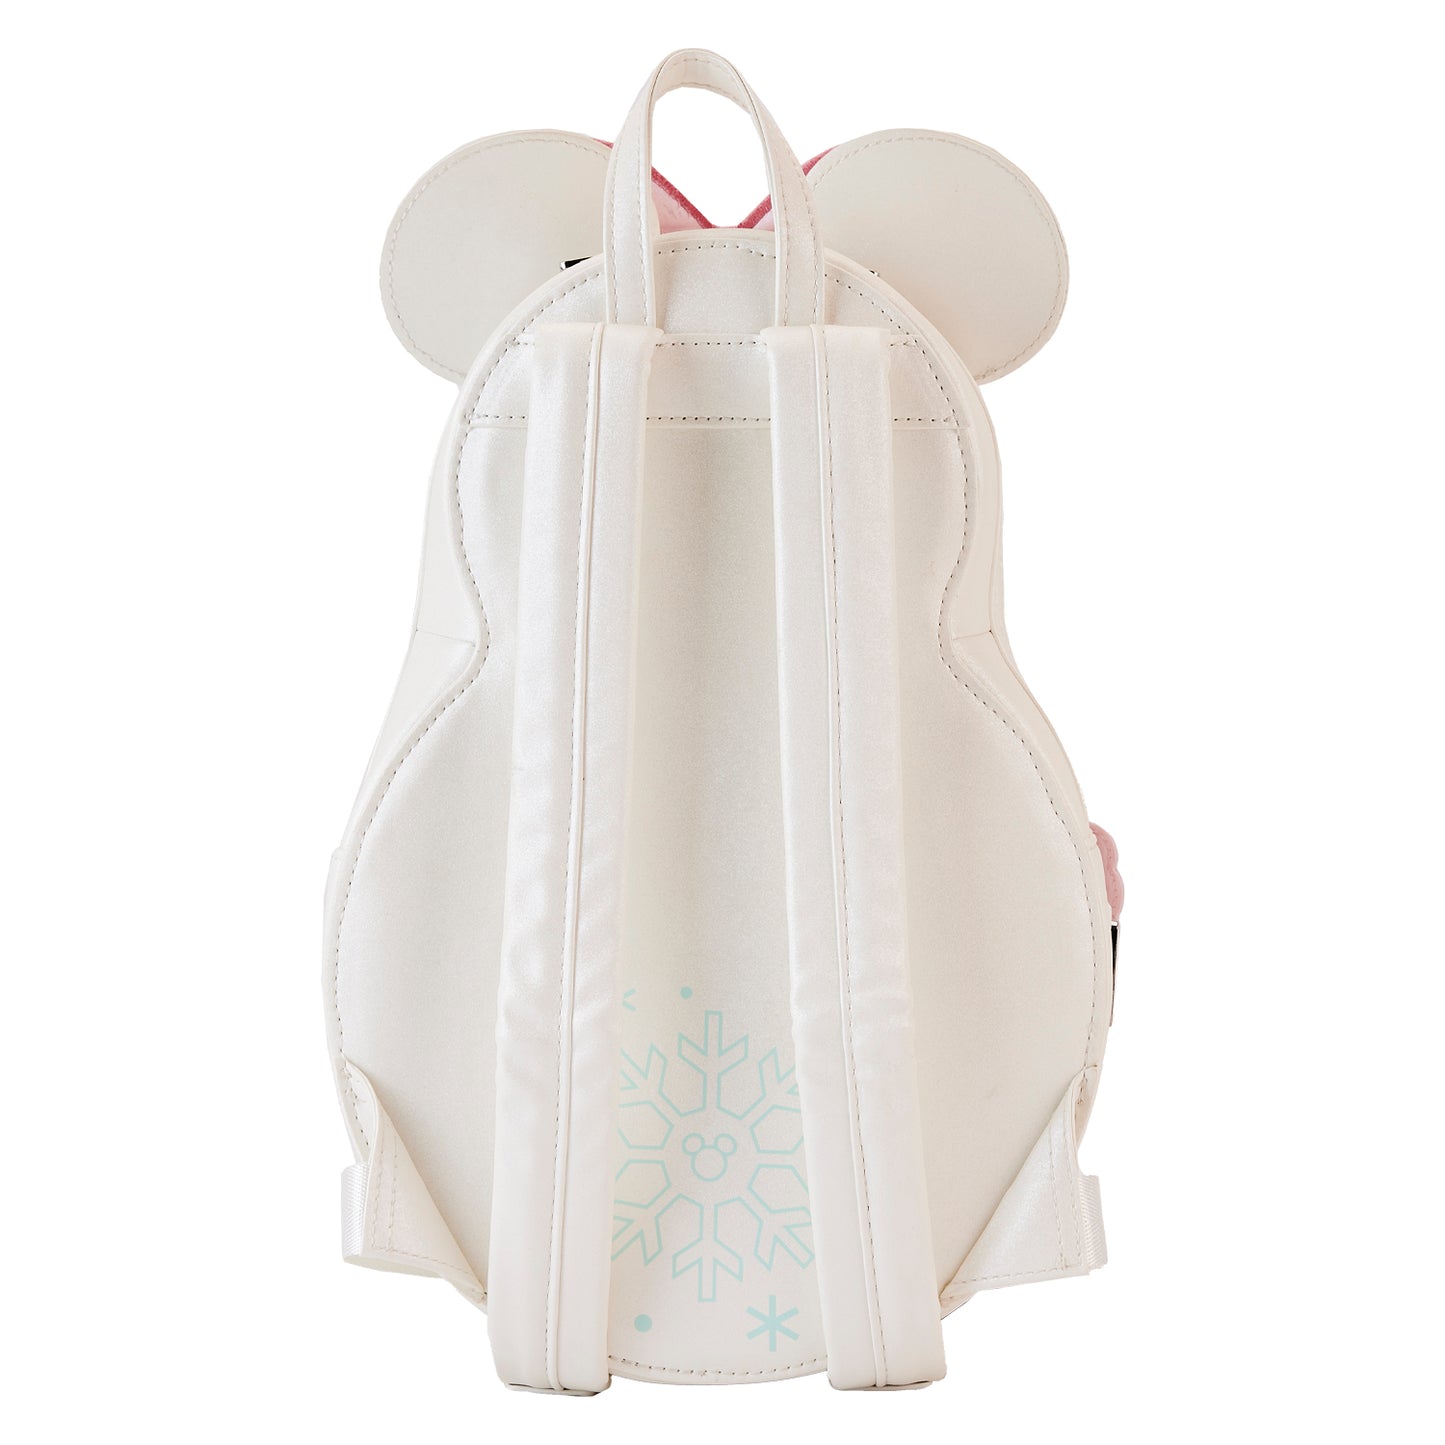 Minnie Pastel Snowman Figural Mini Backpack